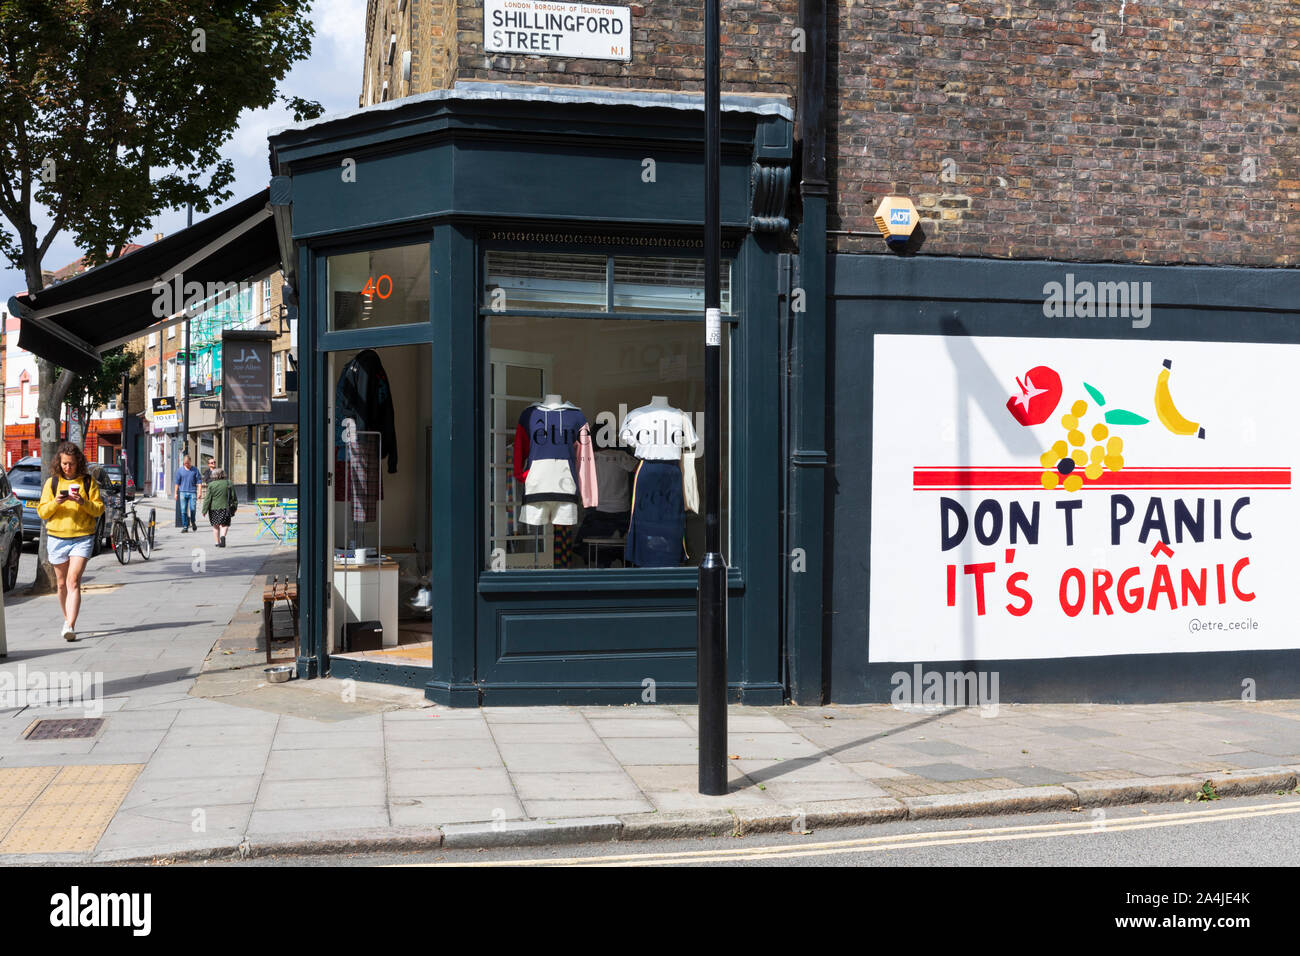 Las tiendas boutique y una que no cunda el pánico es orgánico mural en la esquina de la Calle Cross y Shillingford Street en Islington, Londres, Inglaterra, Reino Unido. Foto de stock